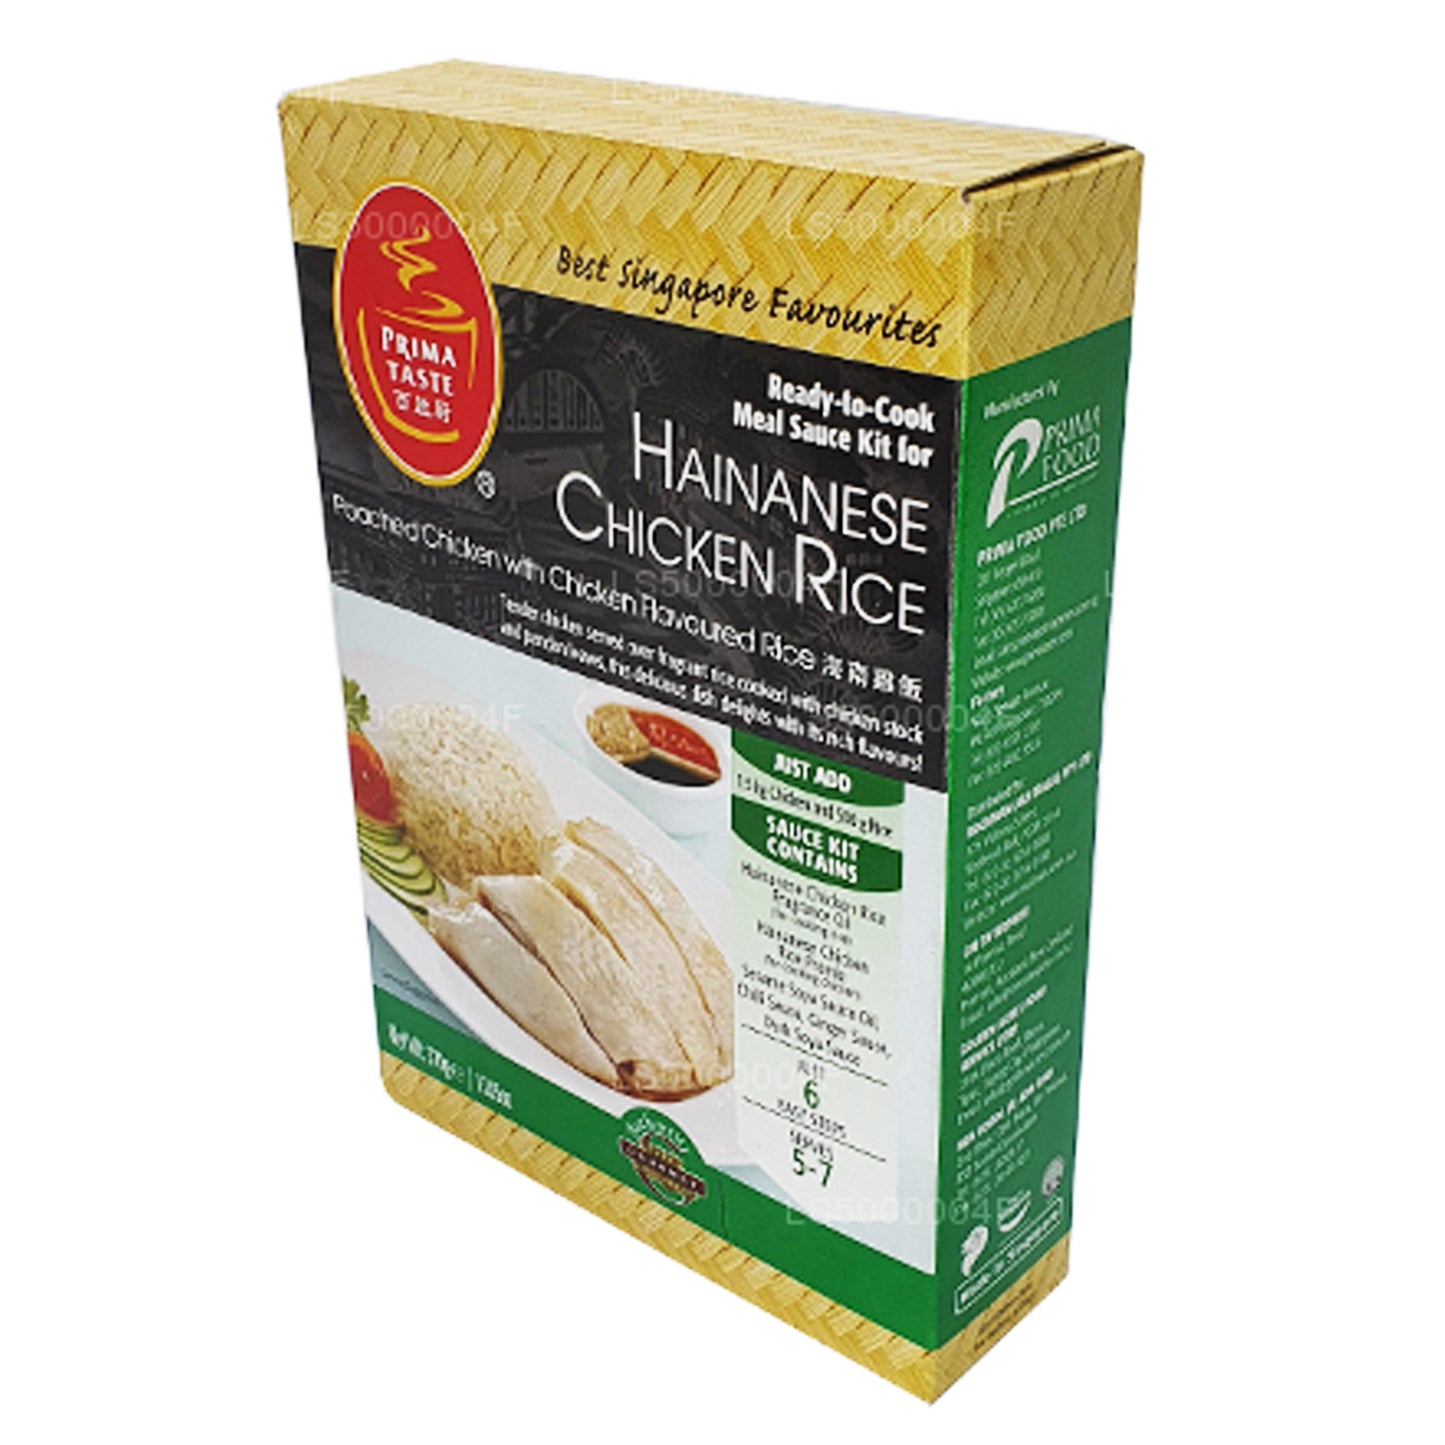 Prima Taste Hainanese Chicken Rice (370g)